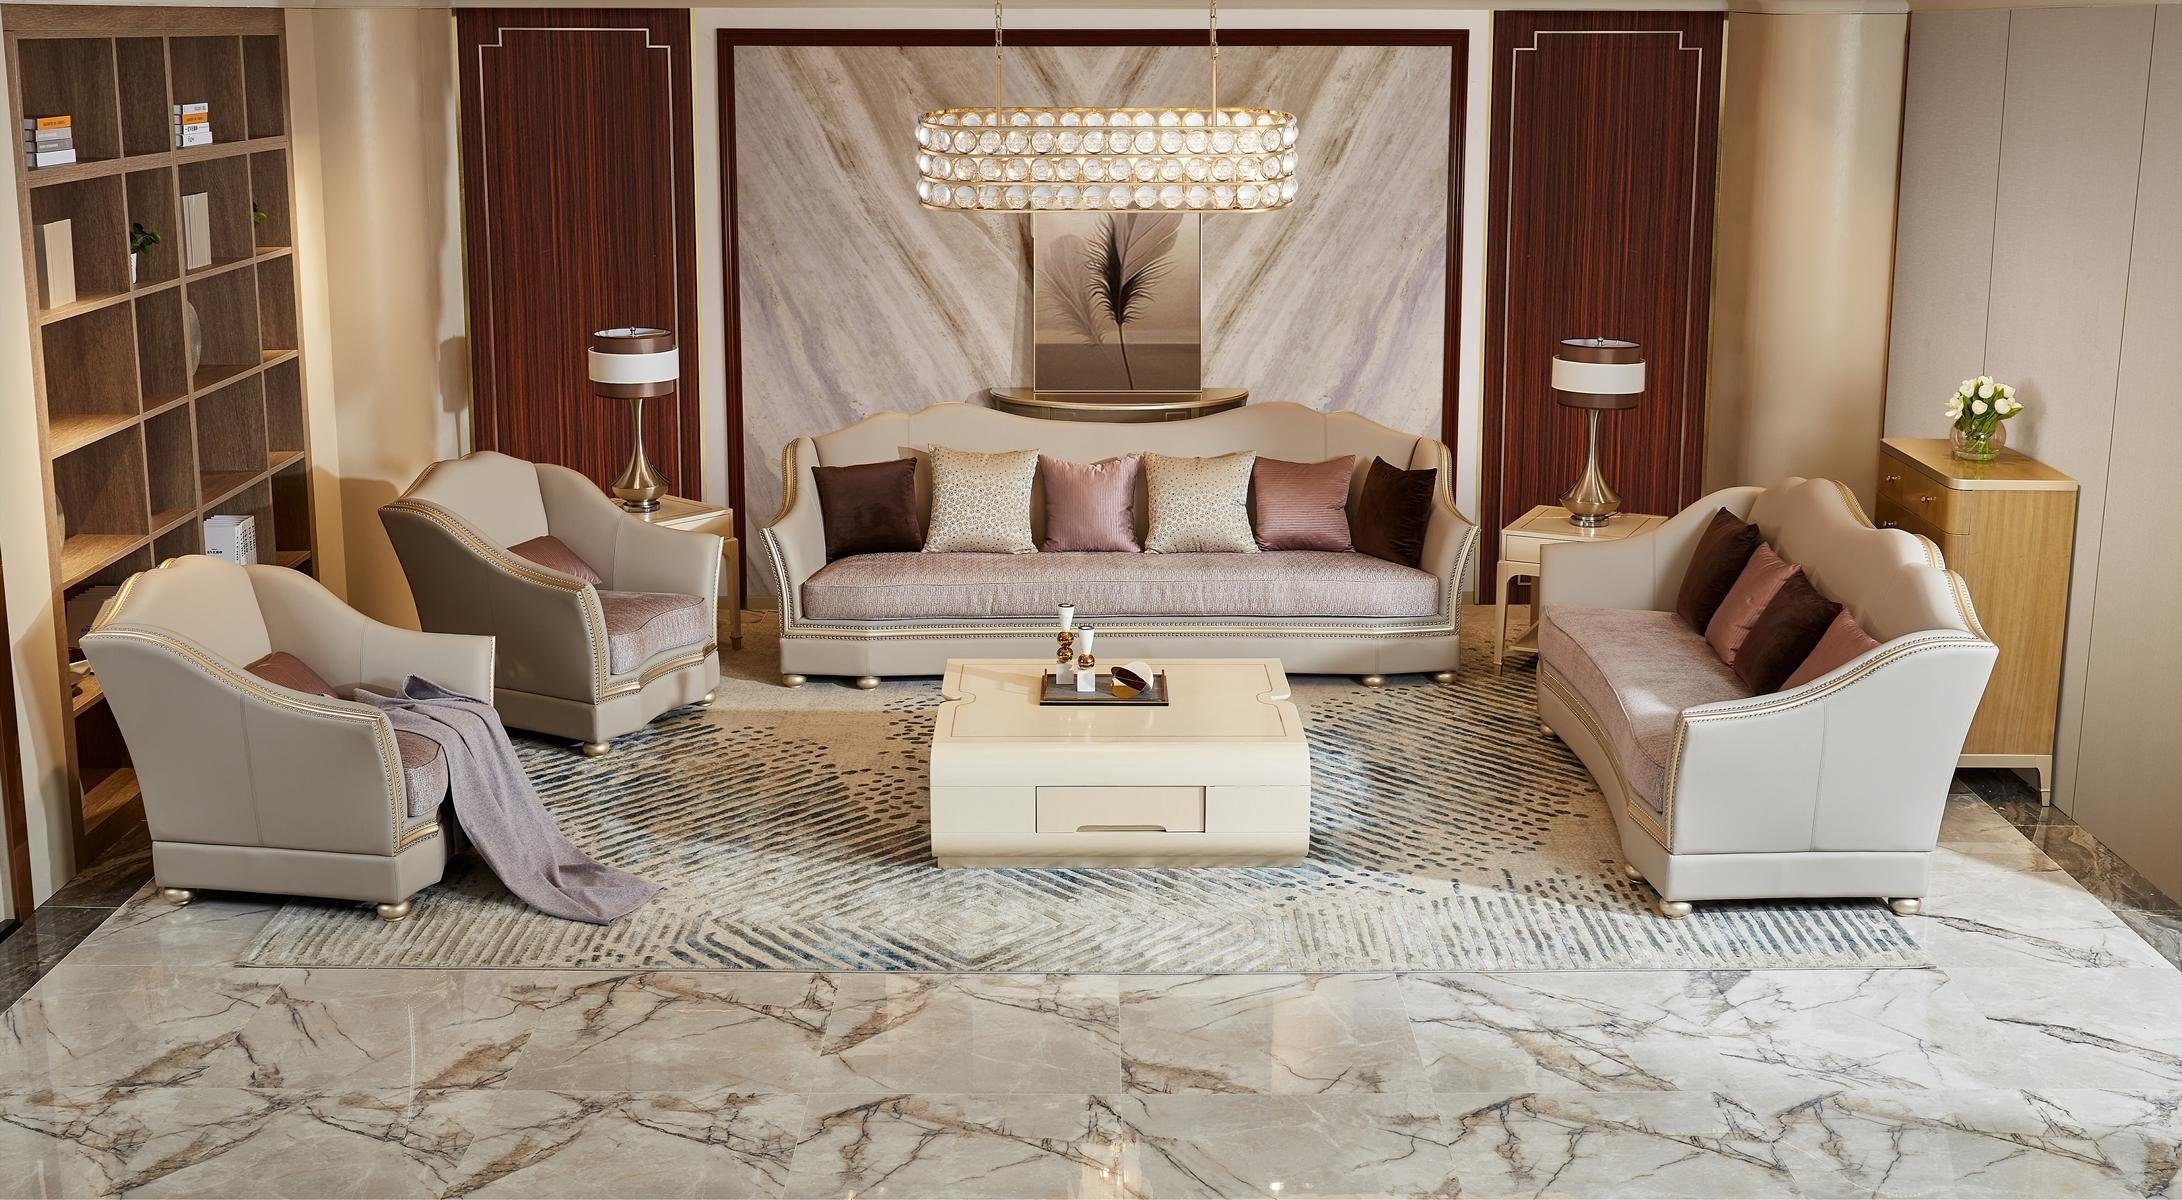 Wohnzimmer Made JVmoebel Luxus Möbel in Sofagarnitur, Design Sitzpolster Europe Sofa